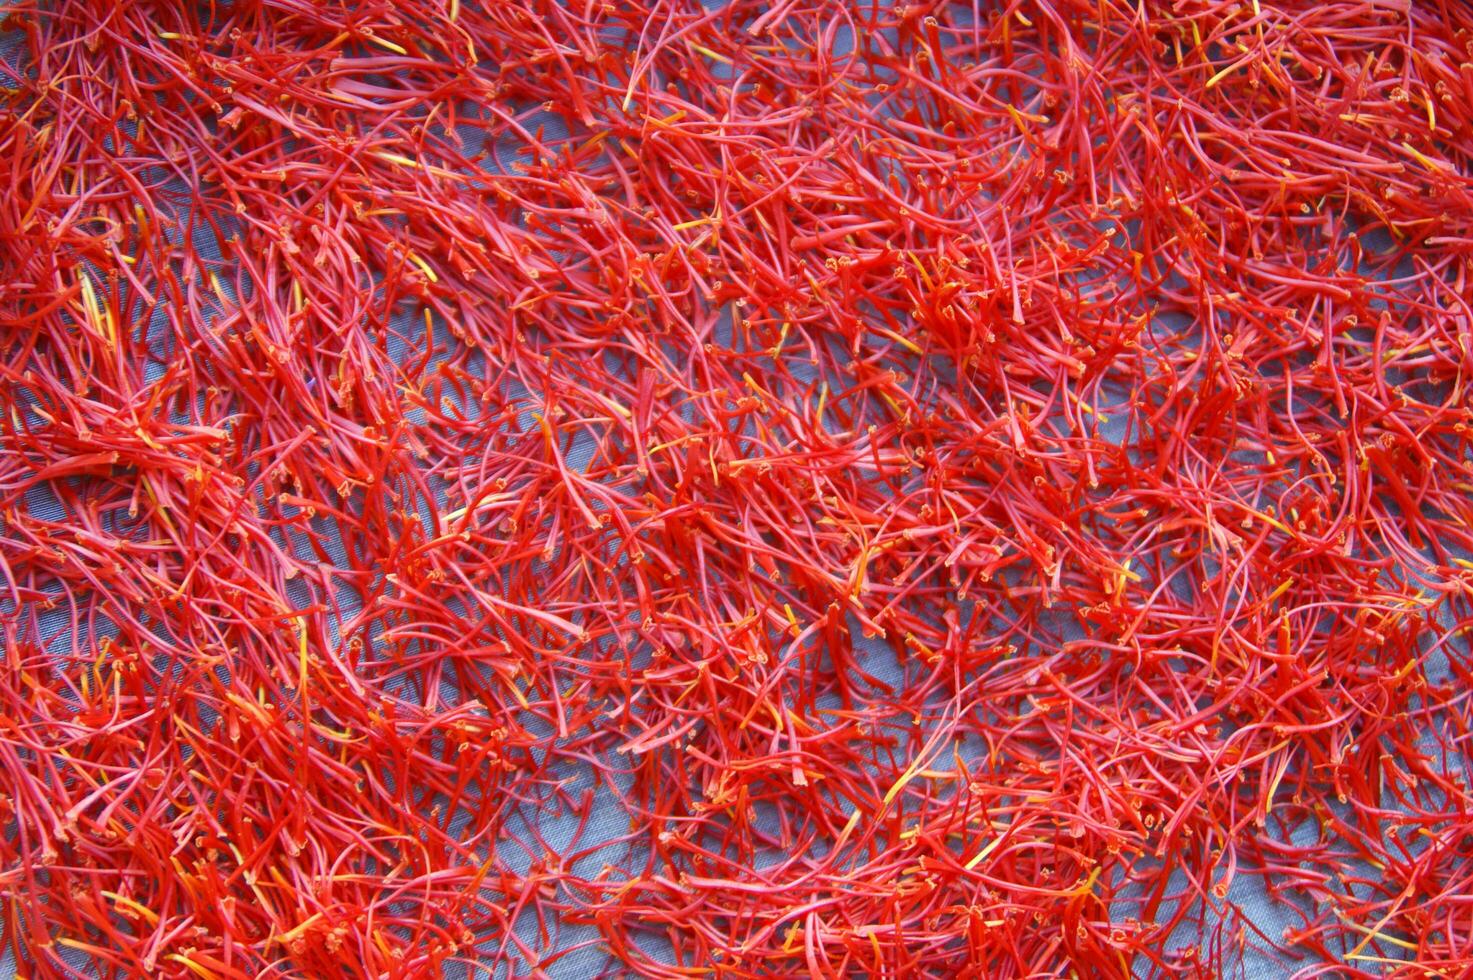 en lugg av röd saffran på en tallrik foto